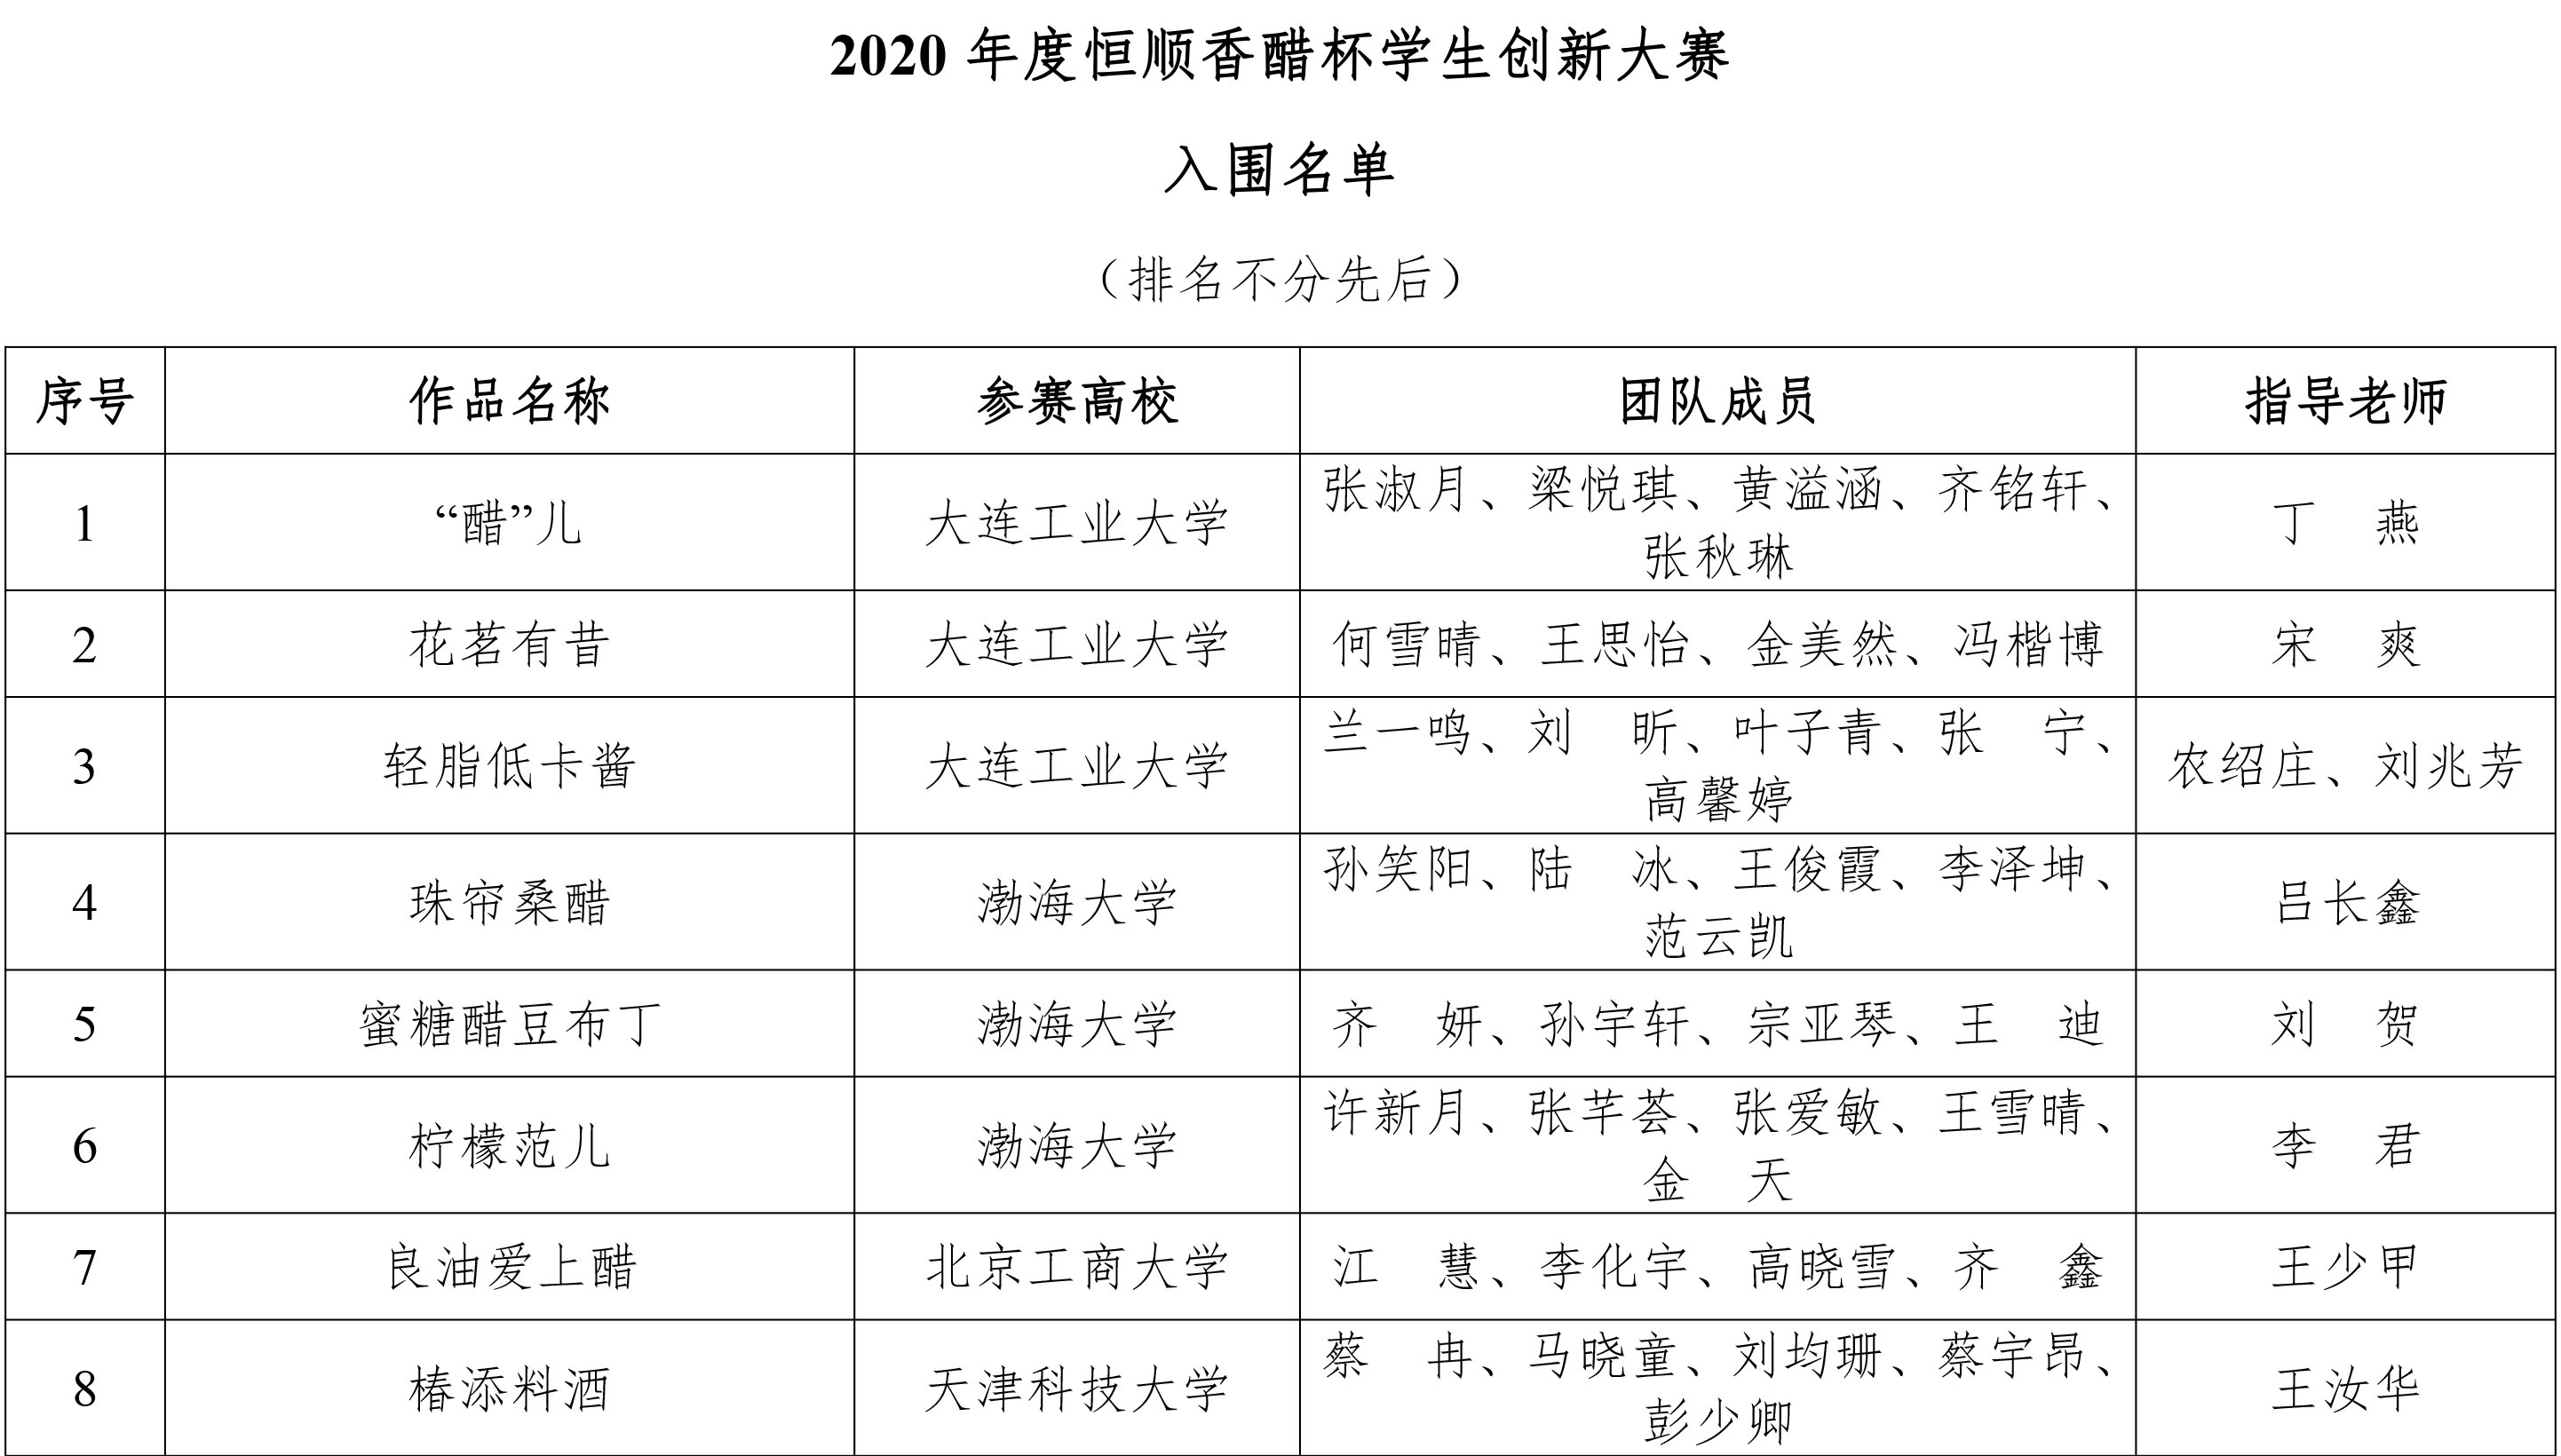 2020年度恒顺香醋杯学生创新大赛-初赛结果揭晓-2.jpg